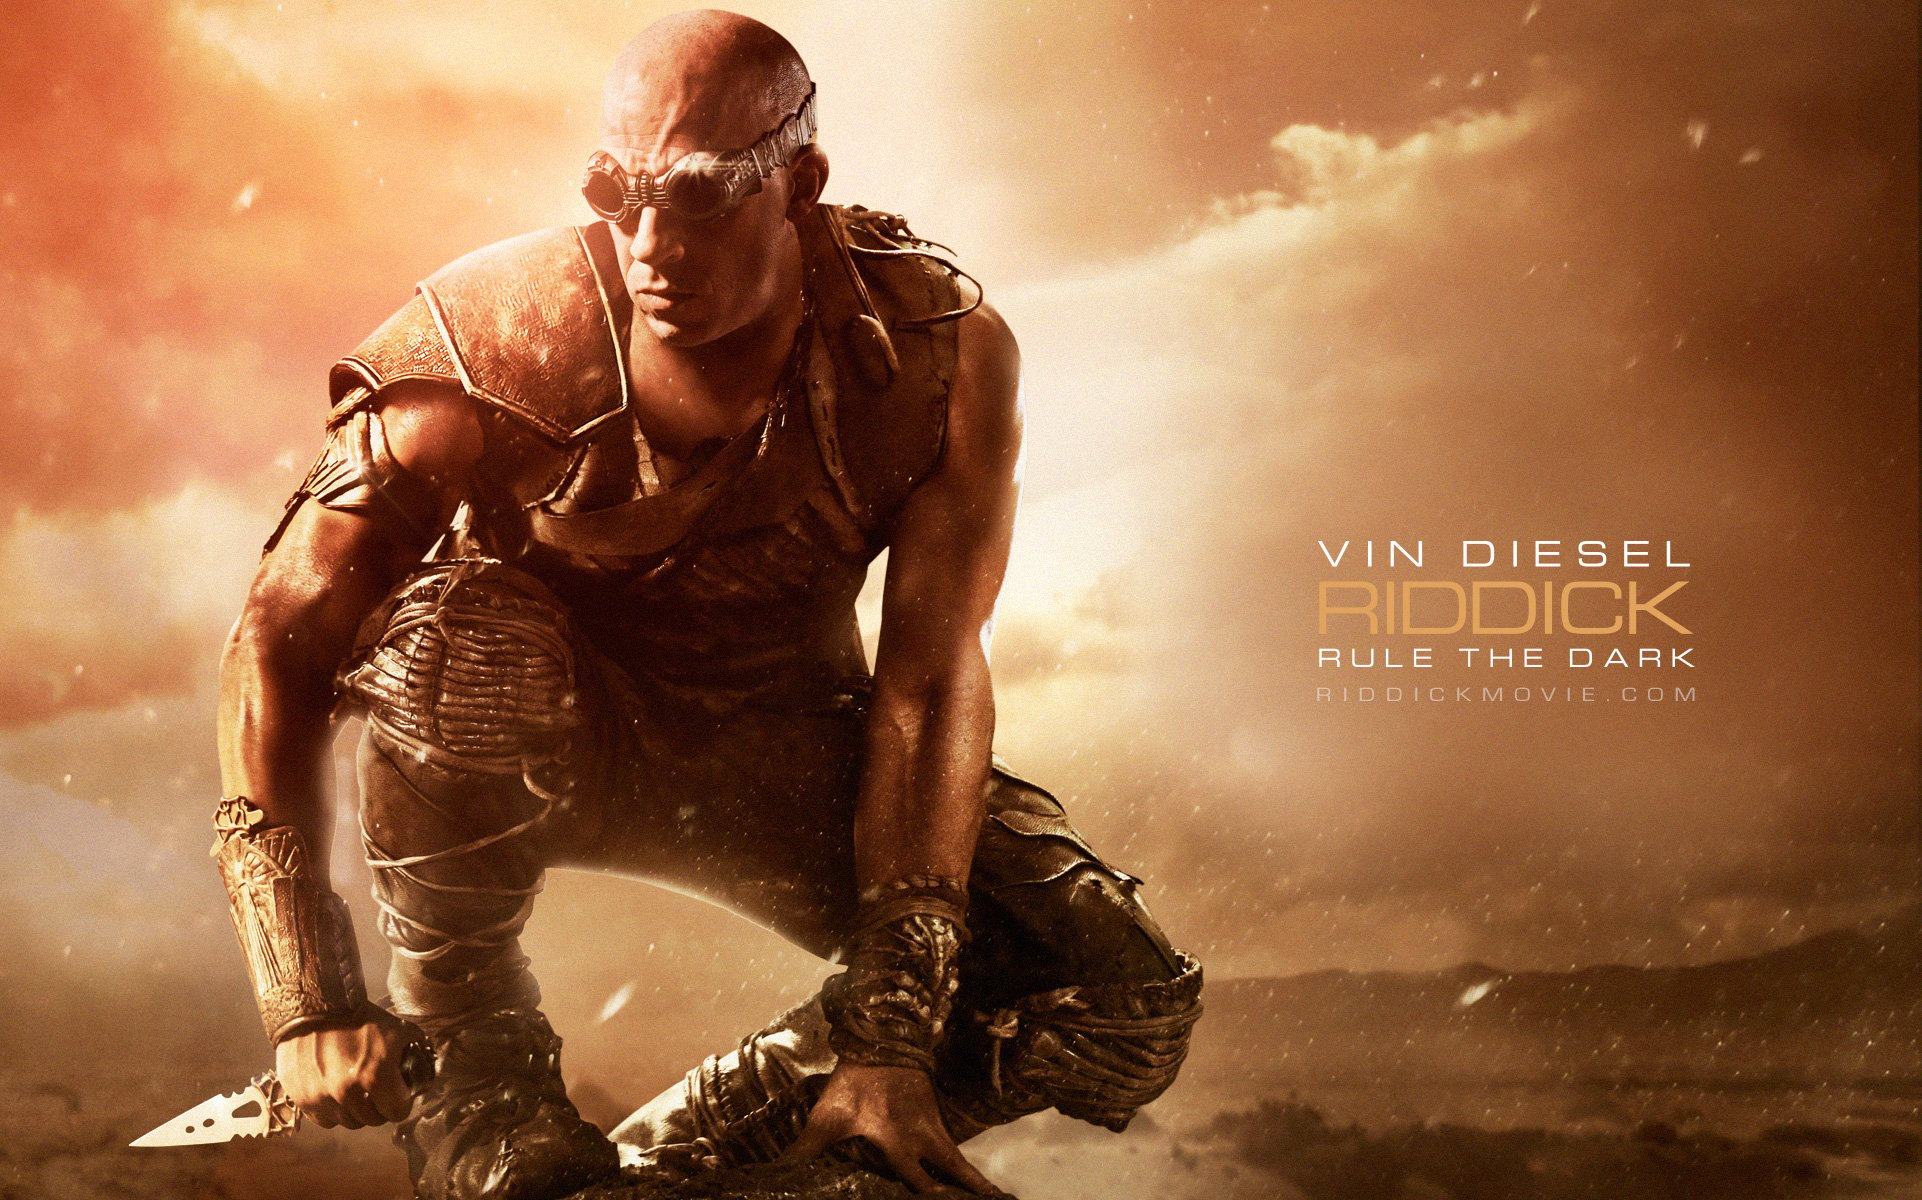 Official Riddick wallpapers starring Vin Diesel Movie Wallpapers